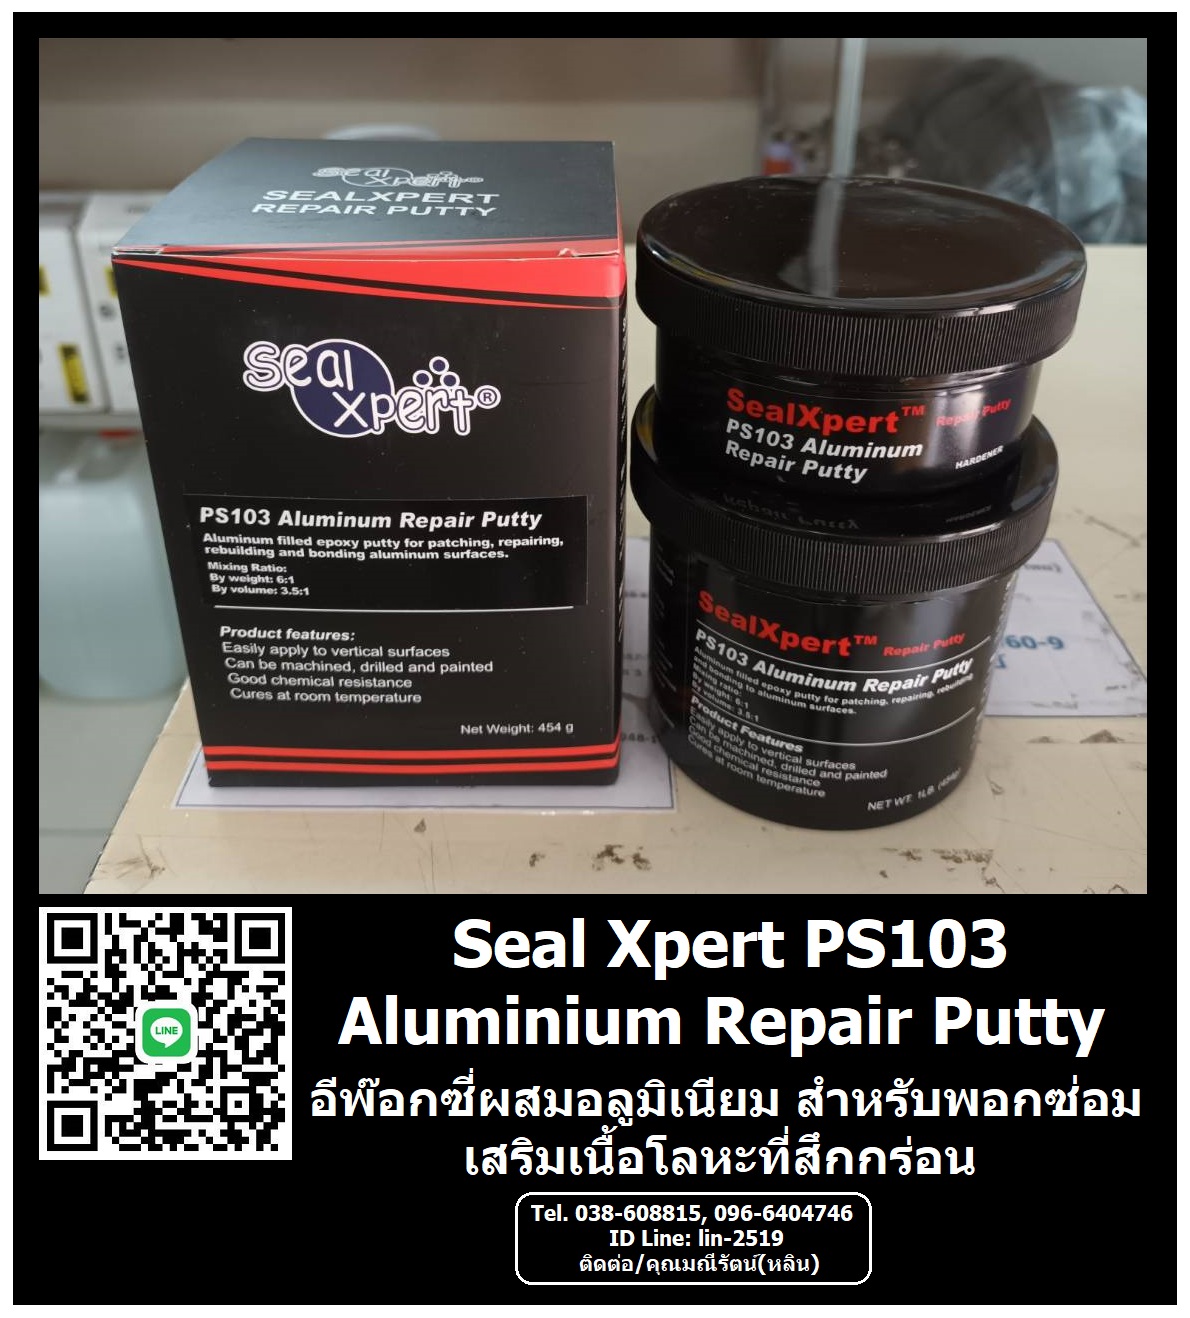 รูปภาพ Seal Xpert PS103 Aluminium Repair Putty กาวอีพ๊อกซี่ซ่อมอลูมิเนียม เนื้อครีมเข้มข้น 2 ส่วน(A+B) ผสมเนื้ออลูมิเนียม สำหรับพอก, ซ่อม, เสริม งานที่สึกกร่อนเสียหาย